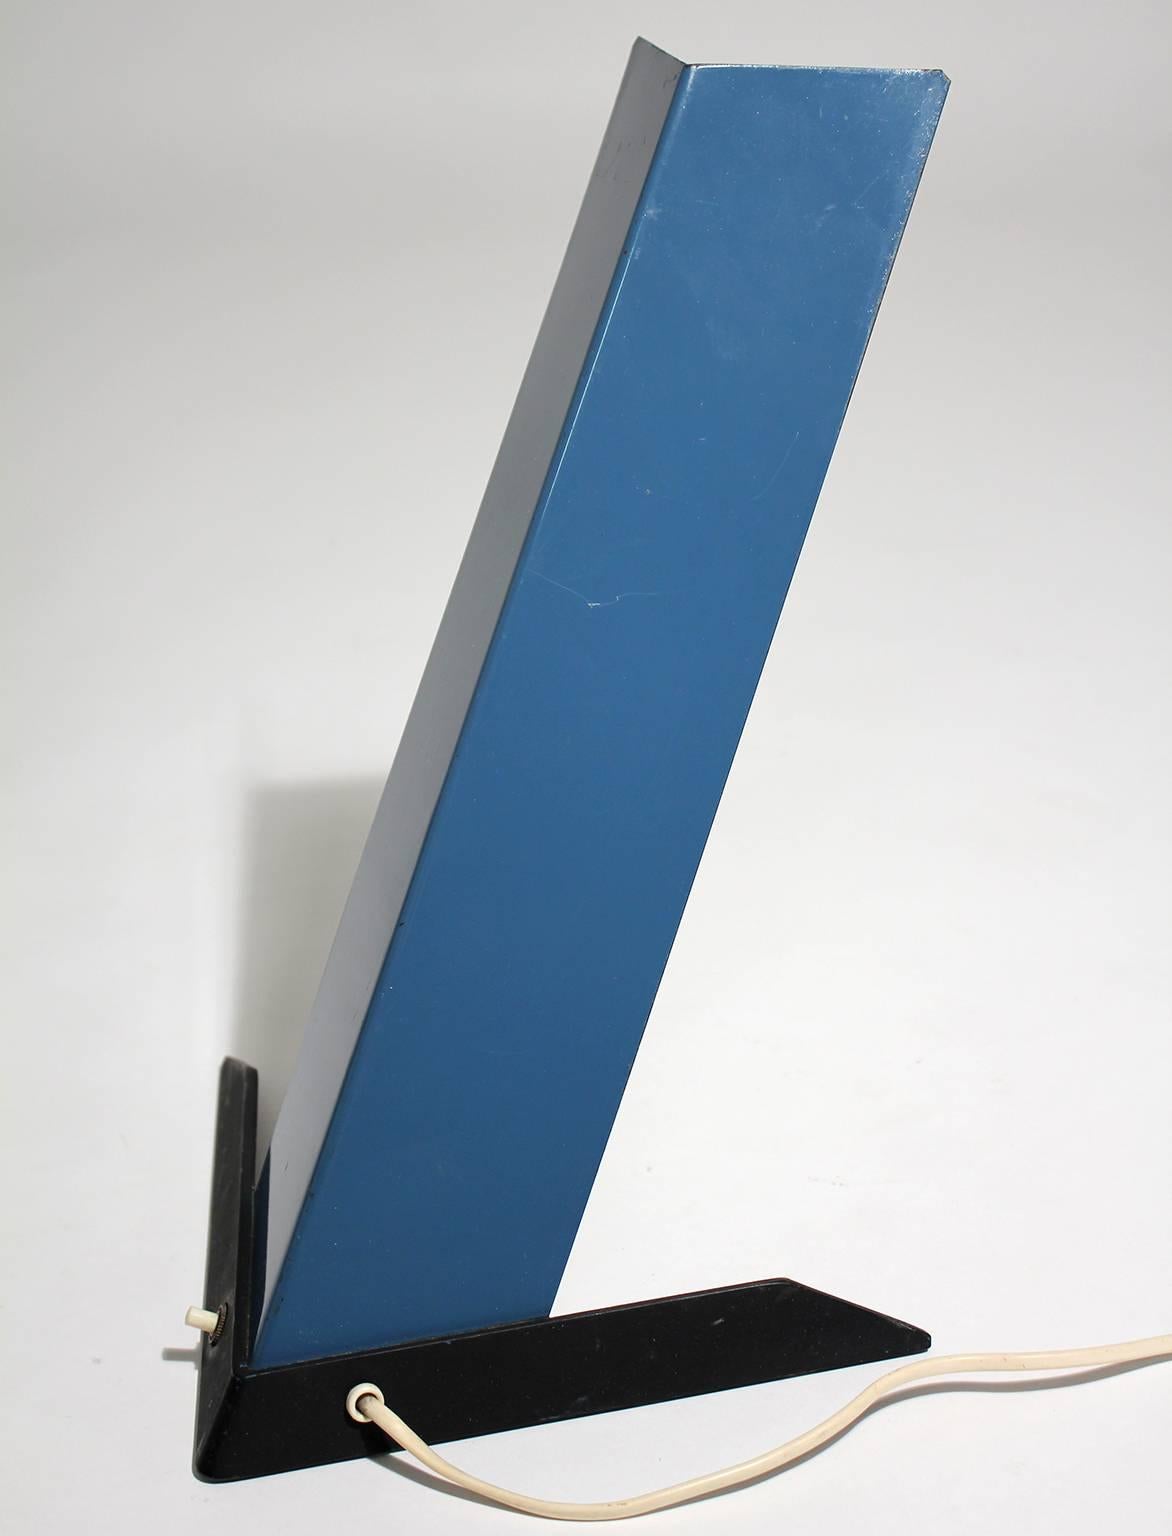 Superbe lampe de table finlandaise au design moderniste, datant des années 1950. Peinture bleue et noire émaillée d'origine. Possède le cordon d'origine et fonctionne parfaitement. En très bon état d'origine.